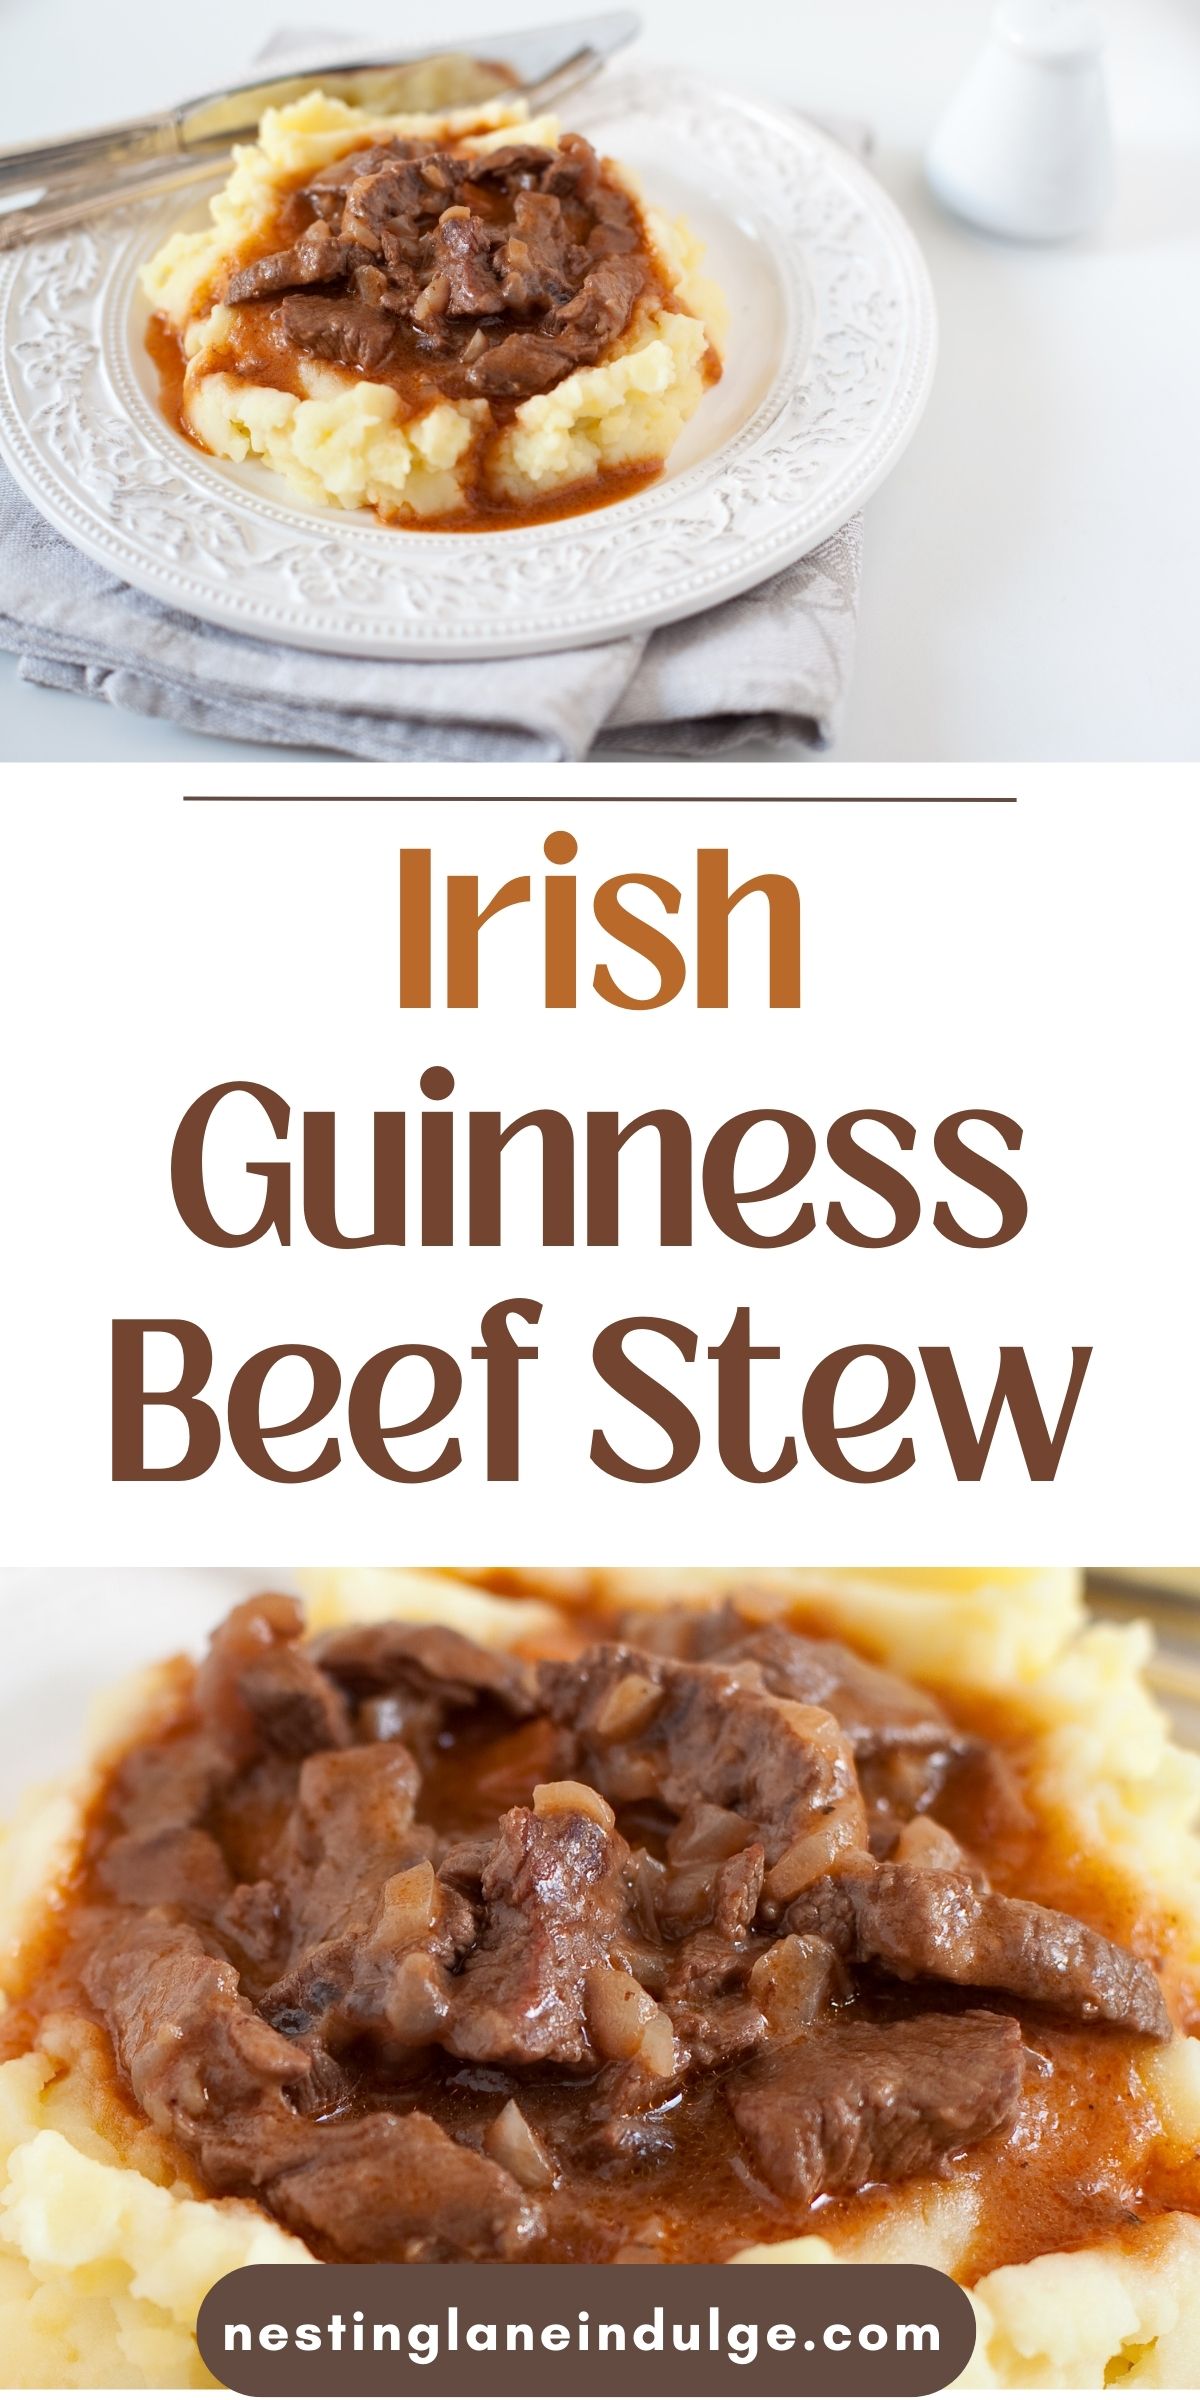 Irish Guinness Beef Stew Graphic.